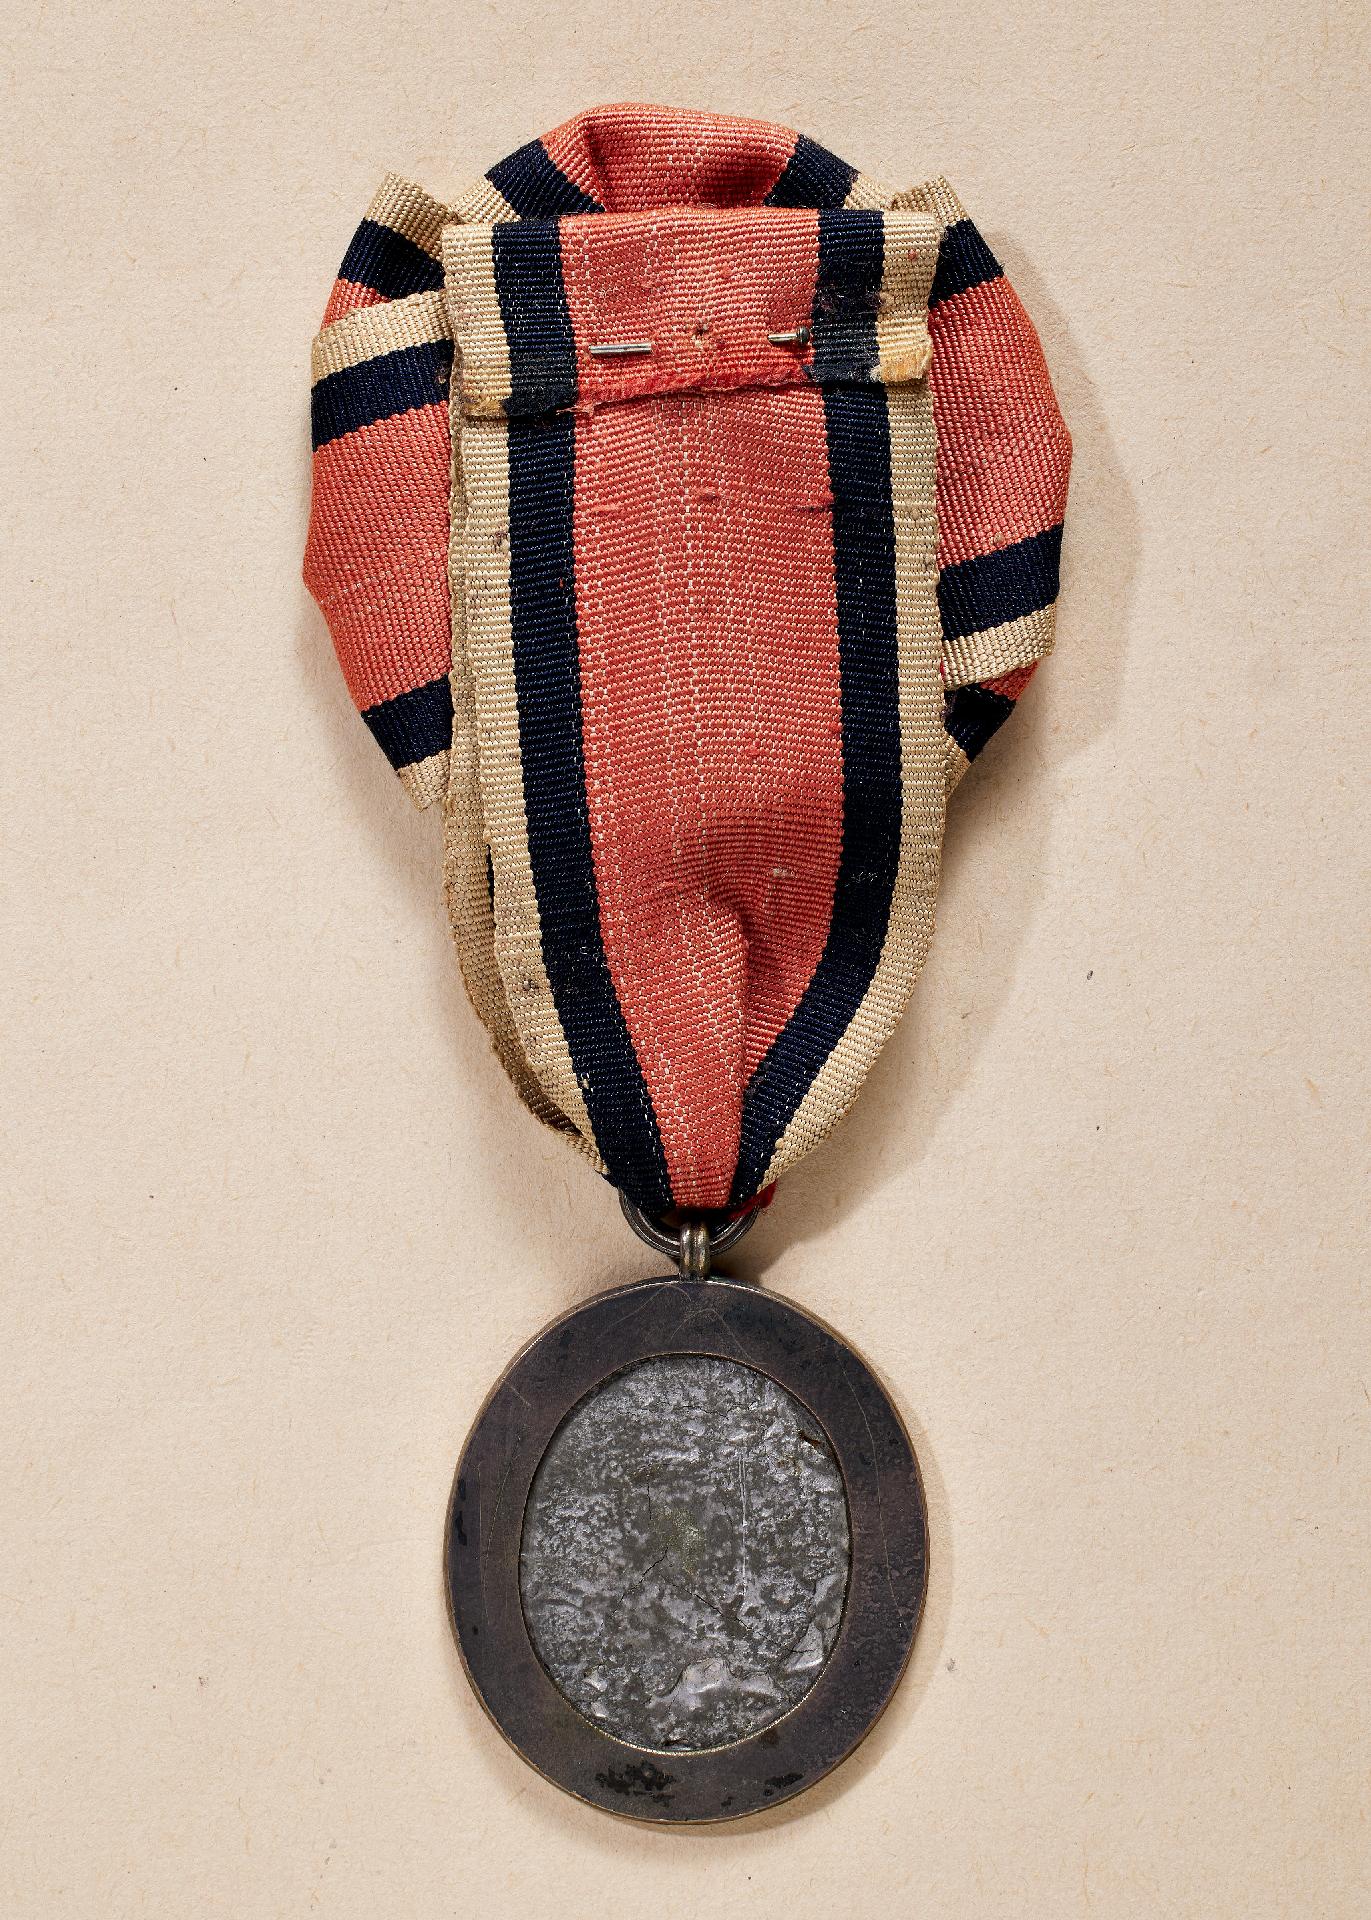 Frankreich : Insignie der Vereinigung der Eroberer der Bastille (Médaille - Insigne de L'Associa... - Image 2 of 2